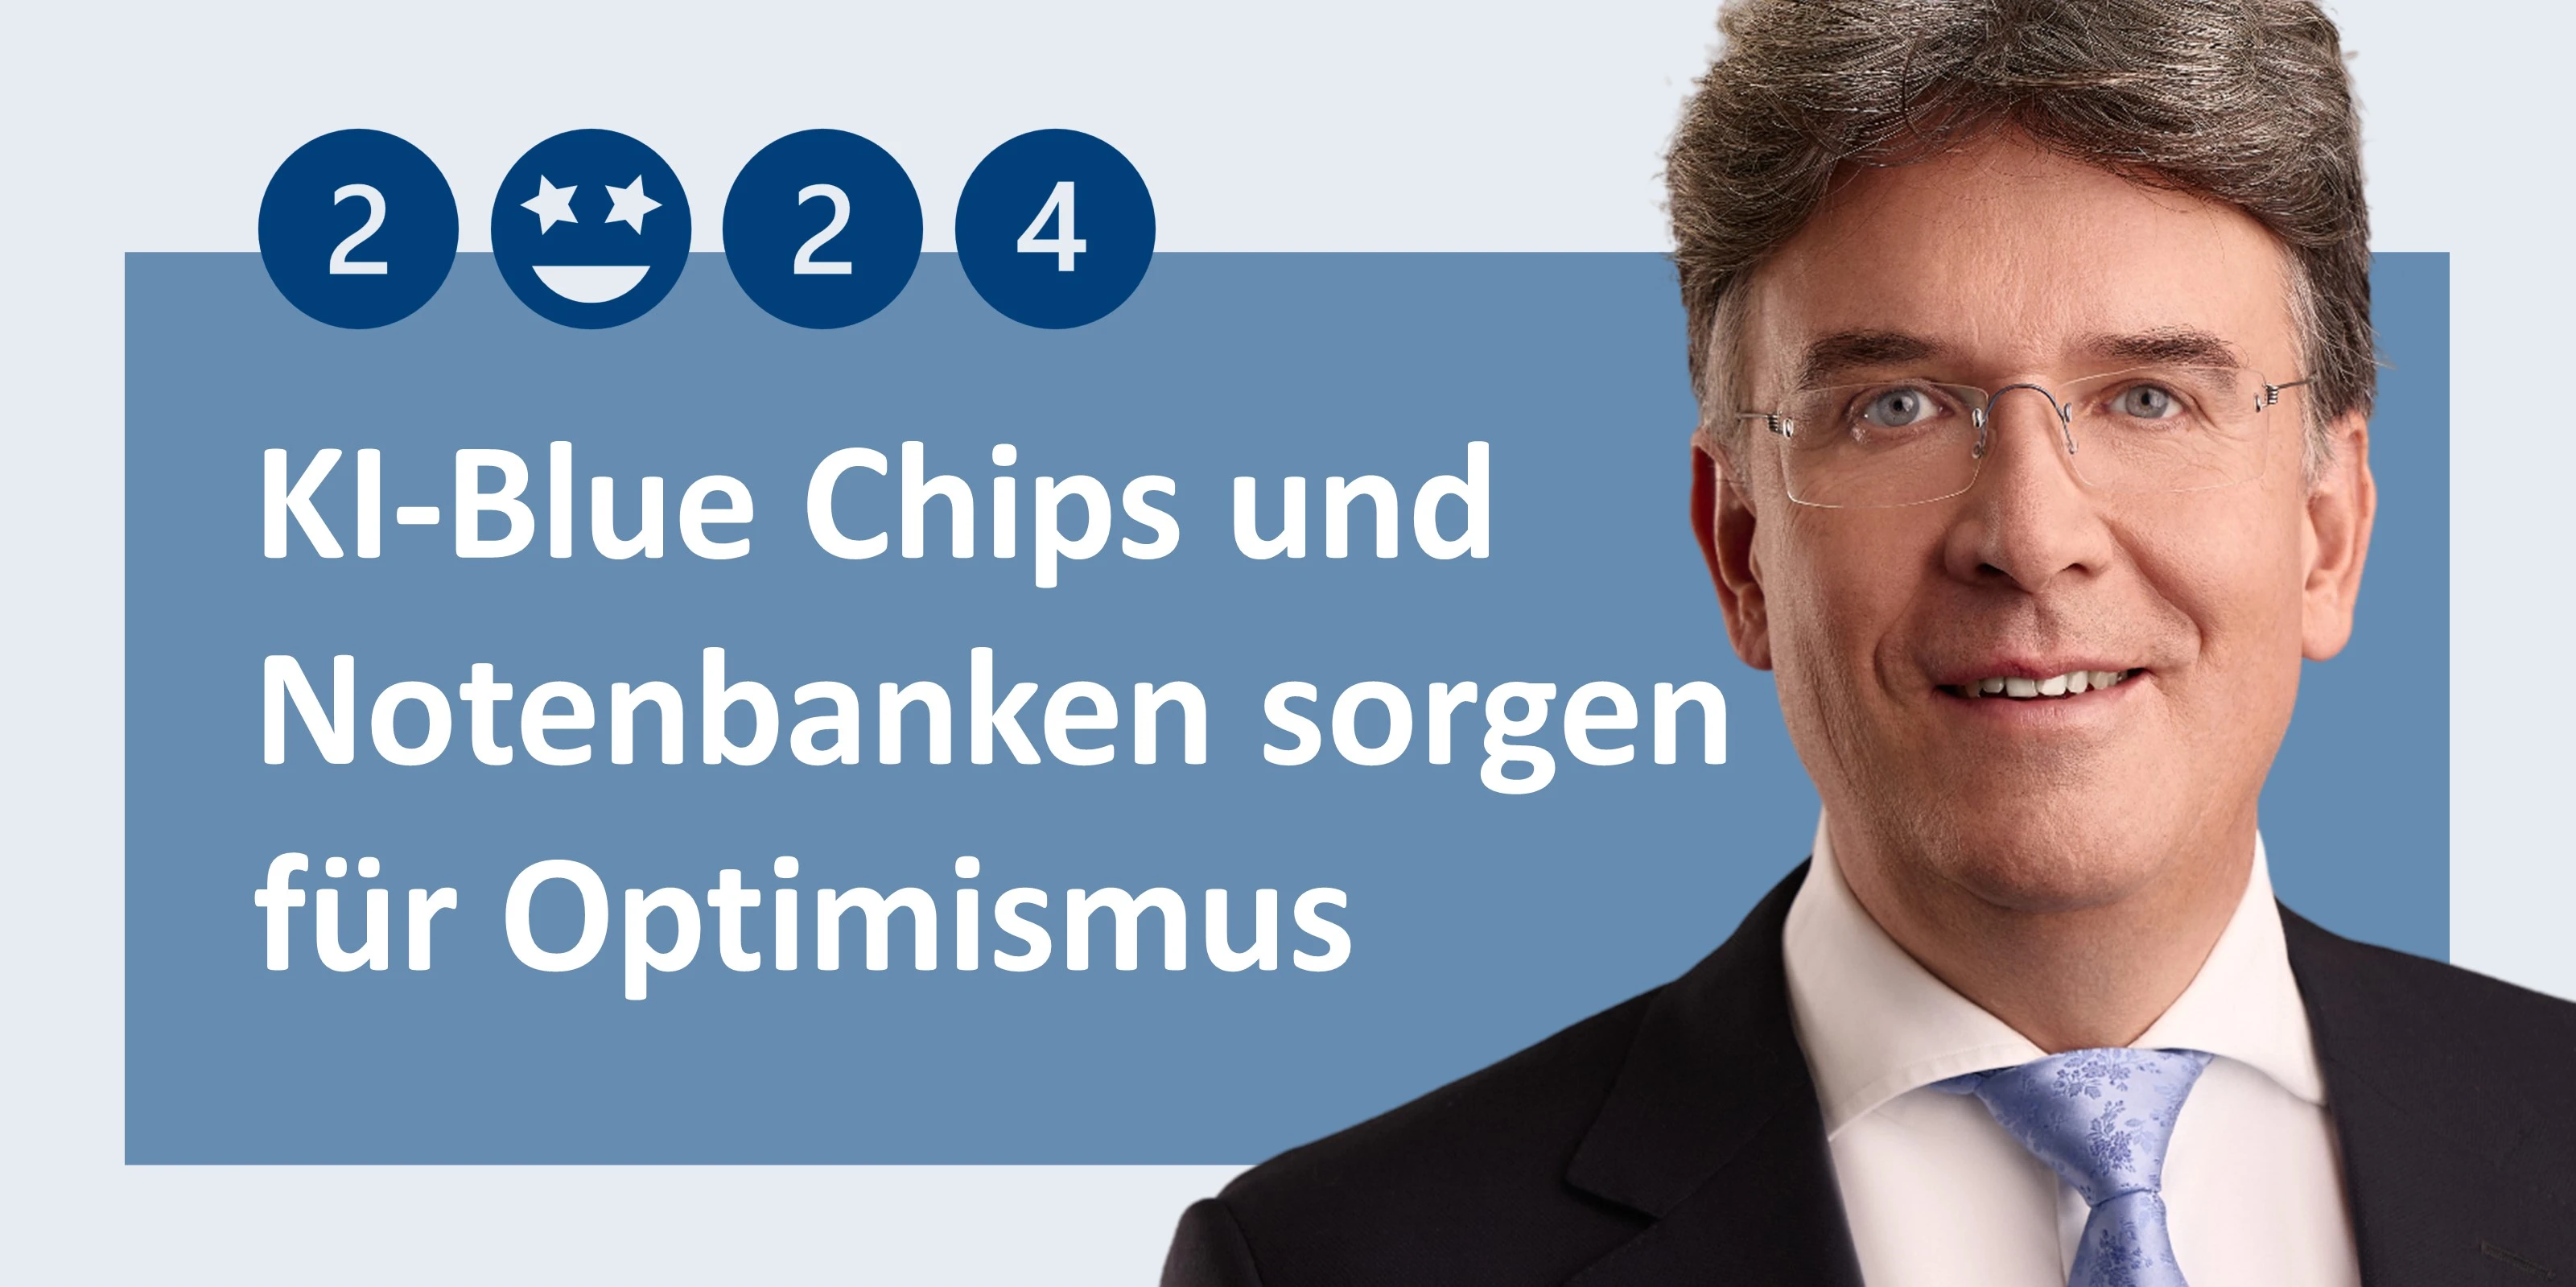 Frank Fischer über das Jahr 2024 und die Themen KI-Blue Chips sowie Notenbanken